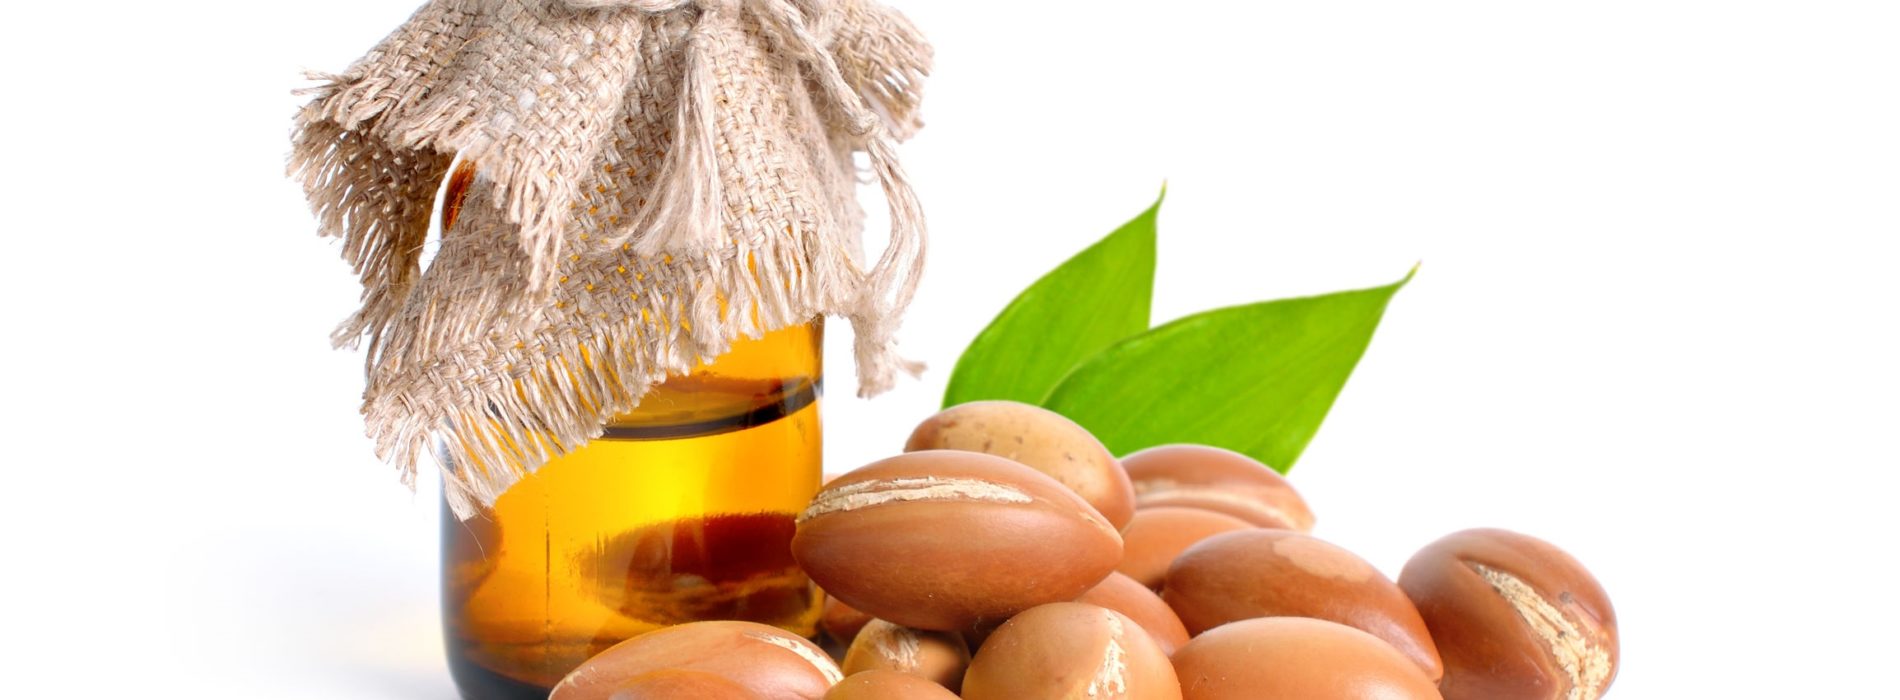 Olej arganowy – Jakie ma właściwości i zastosowanie